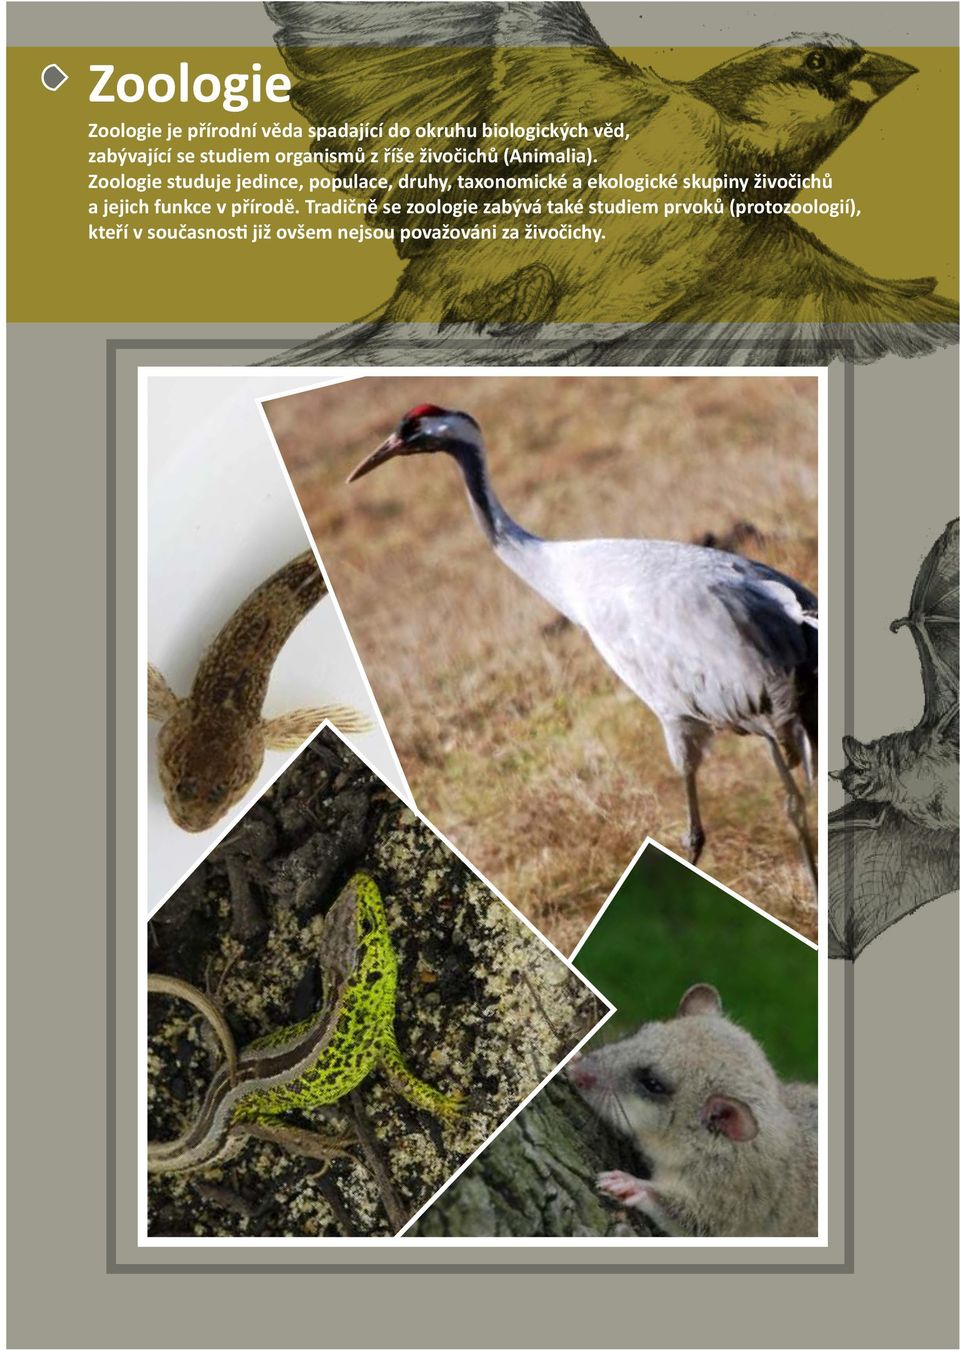 Zoologie studuje jedince, populace, druhy, taxonomické a ekologické skupiny živočichů a